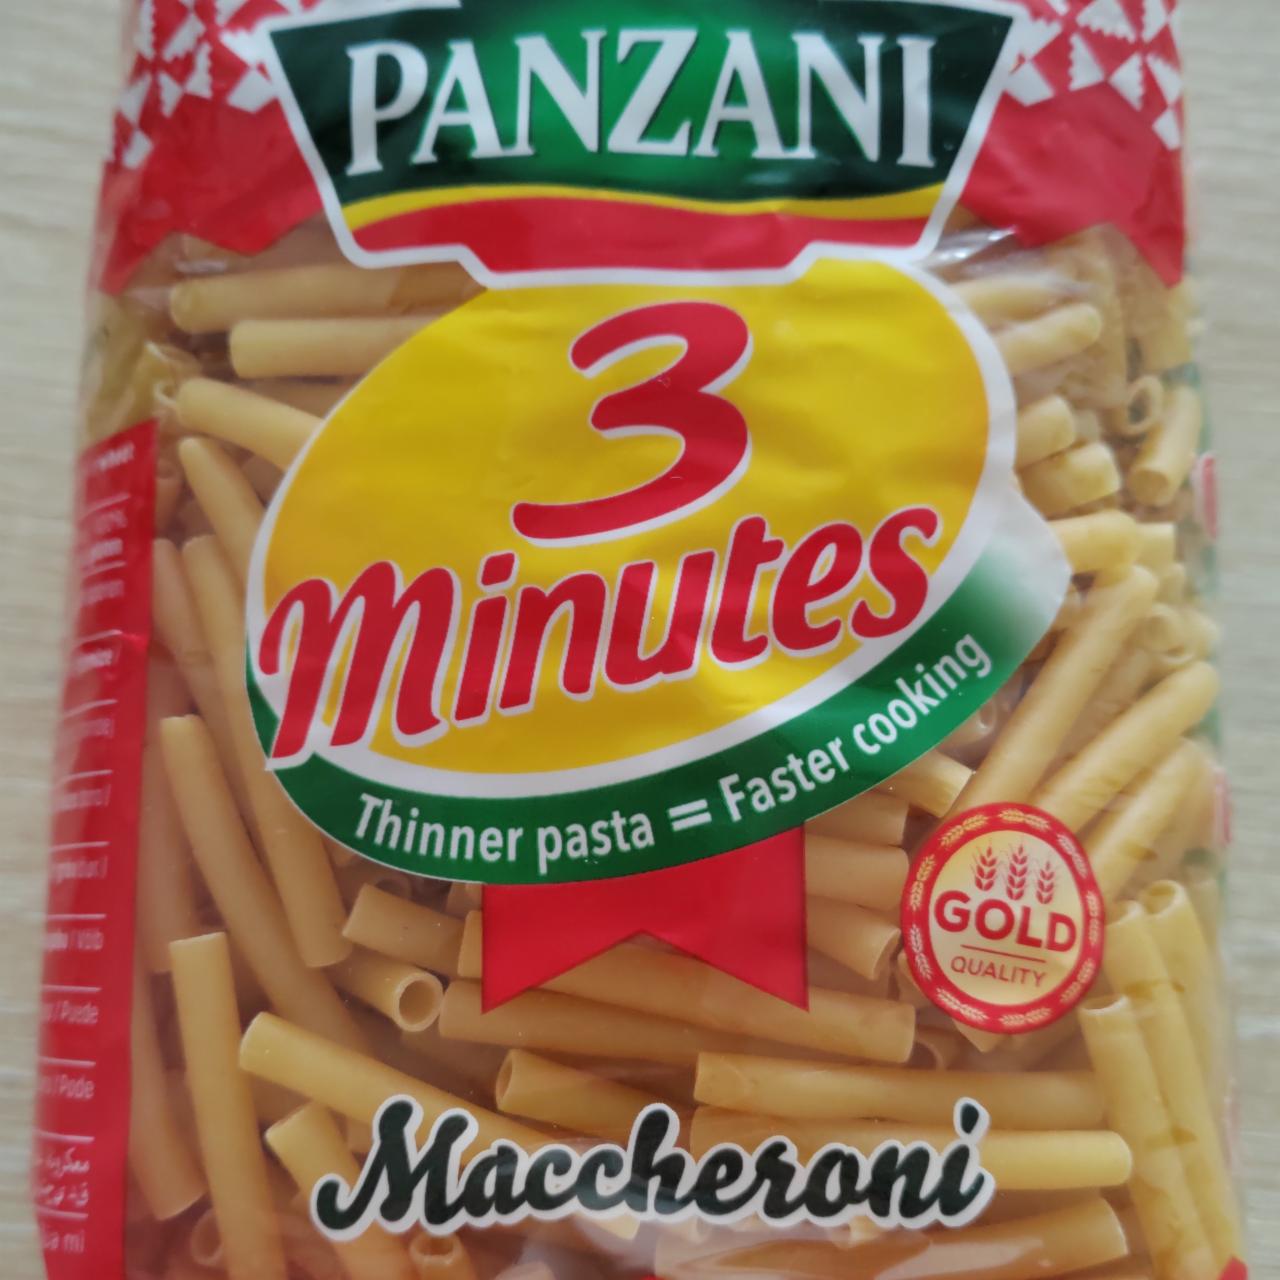 Fotografie - 3 Minutes Maccheroni Panzani